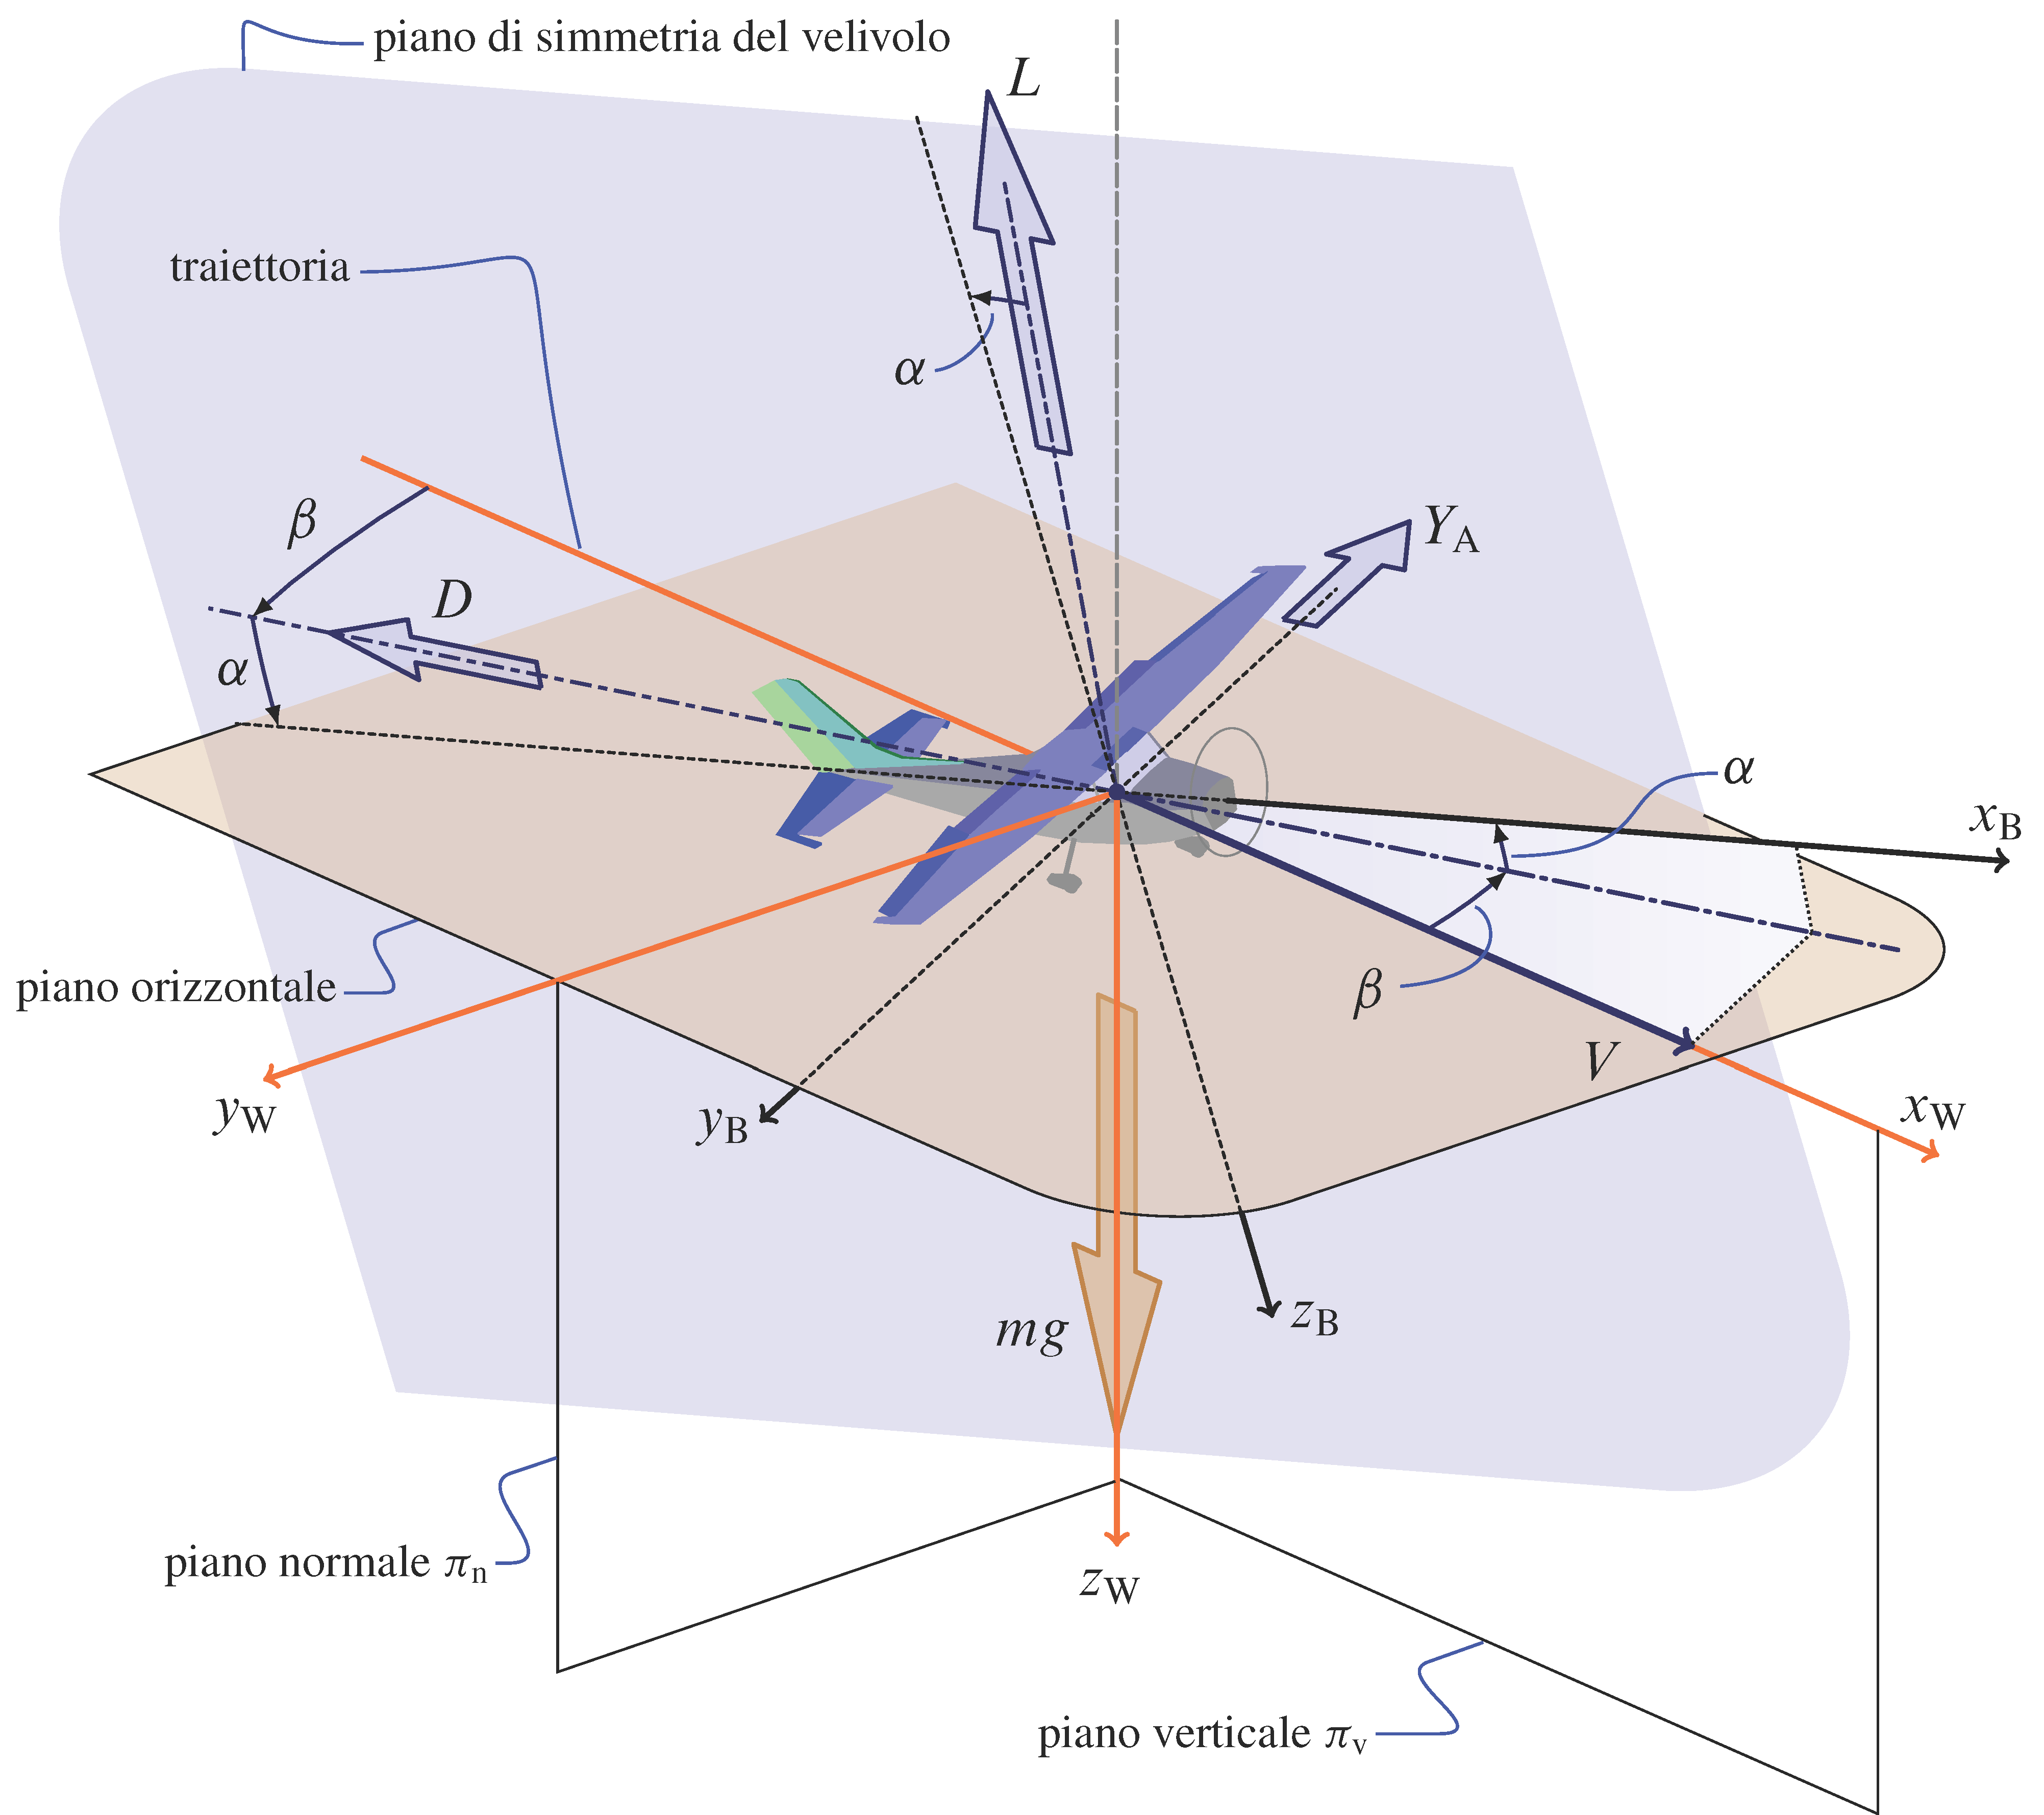 Aircraft in non-symmetric flight and aerodynamic axes.